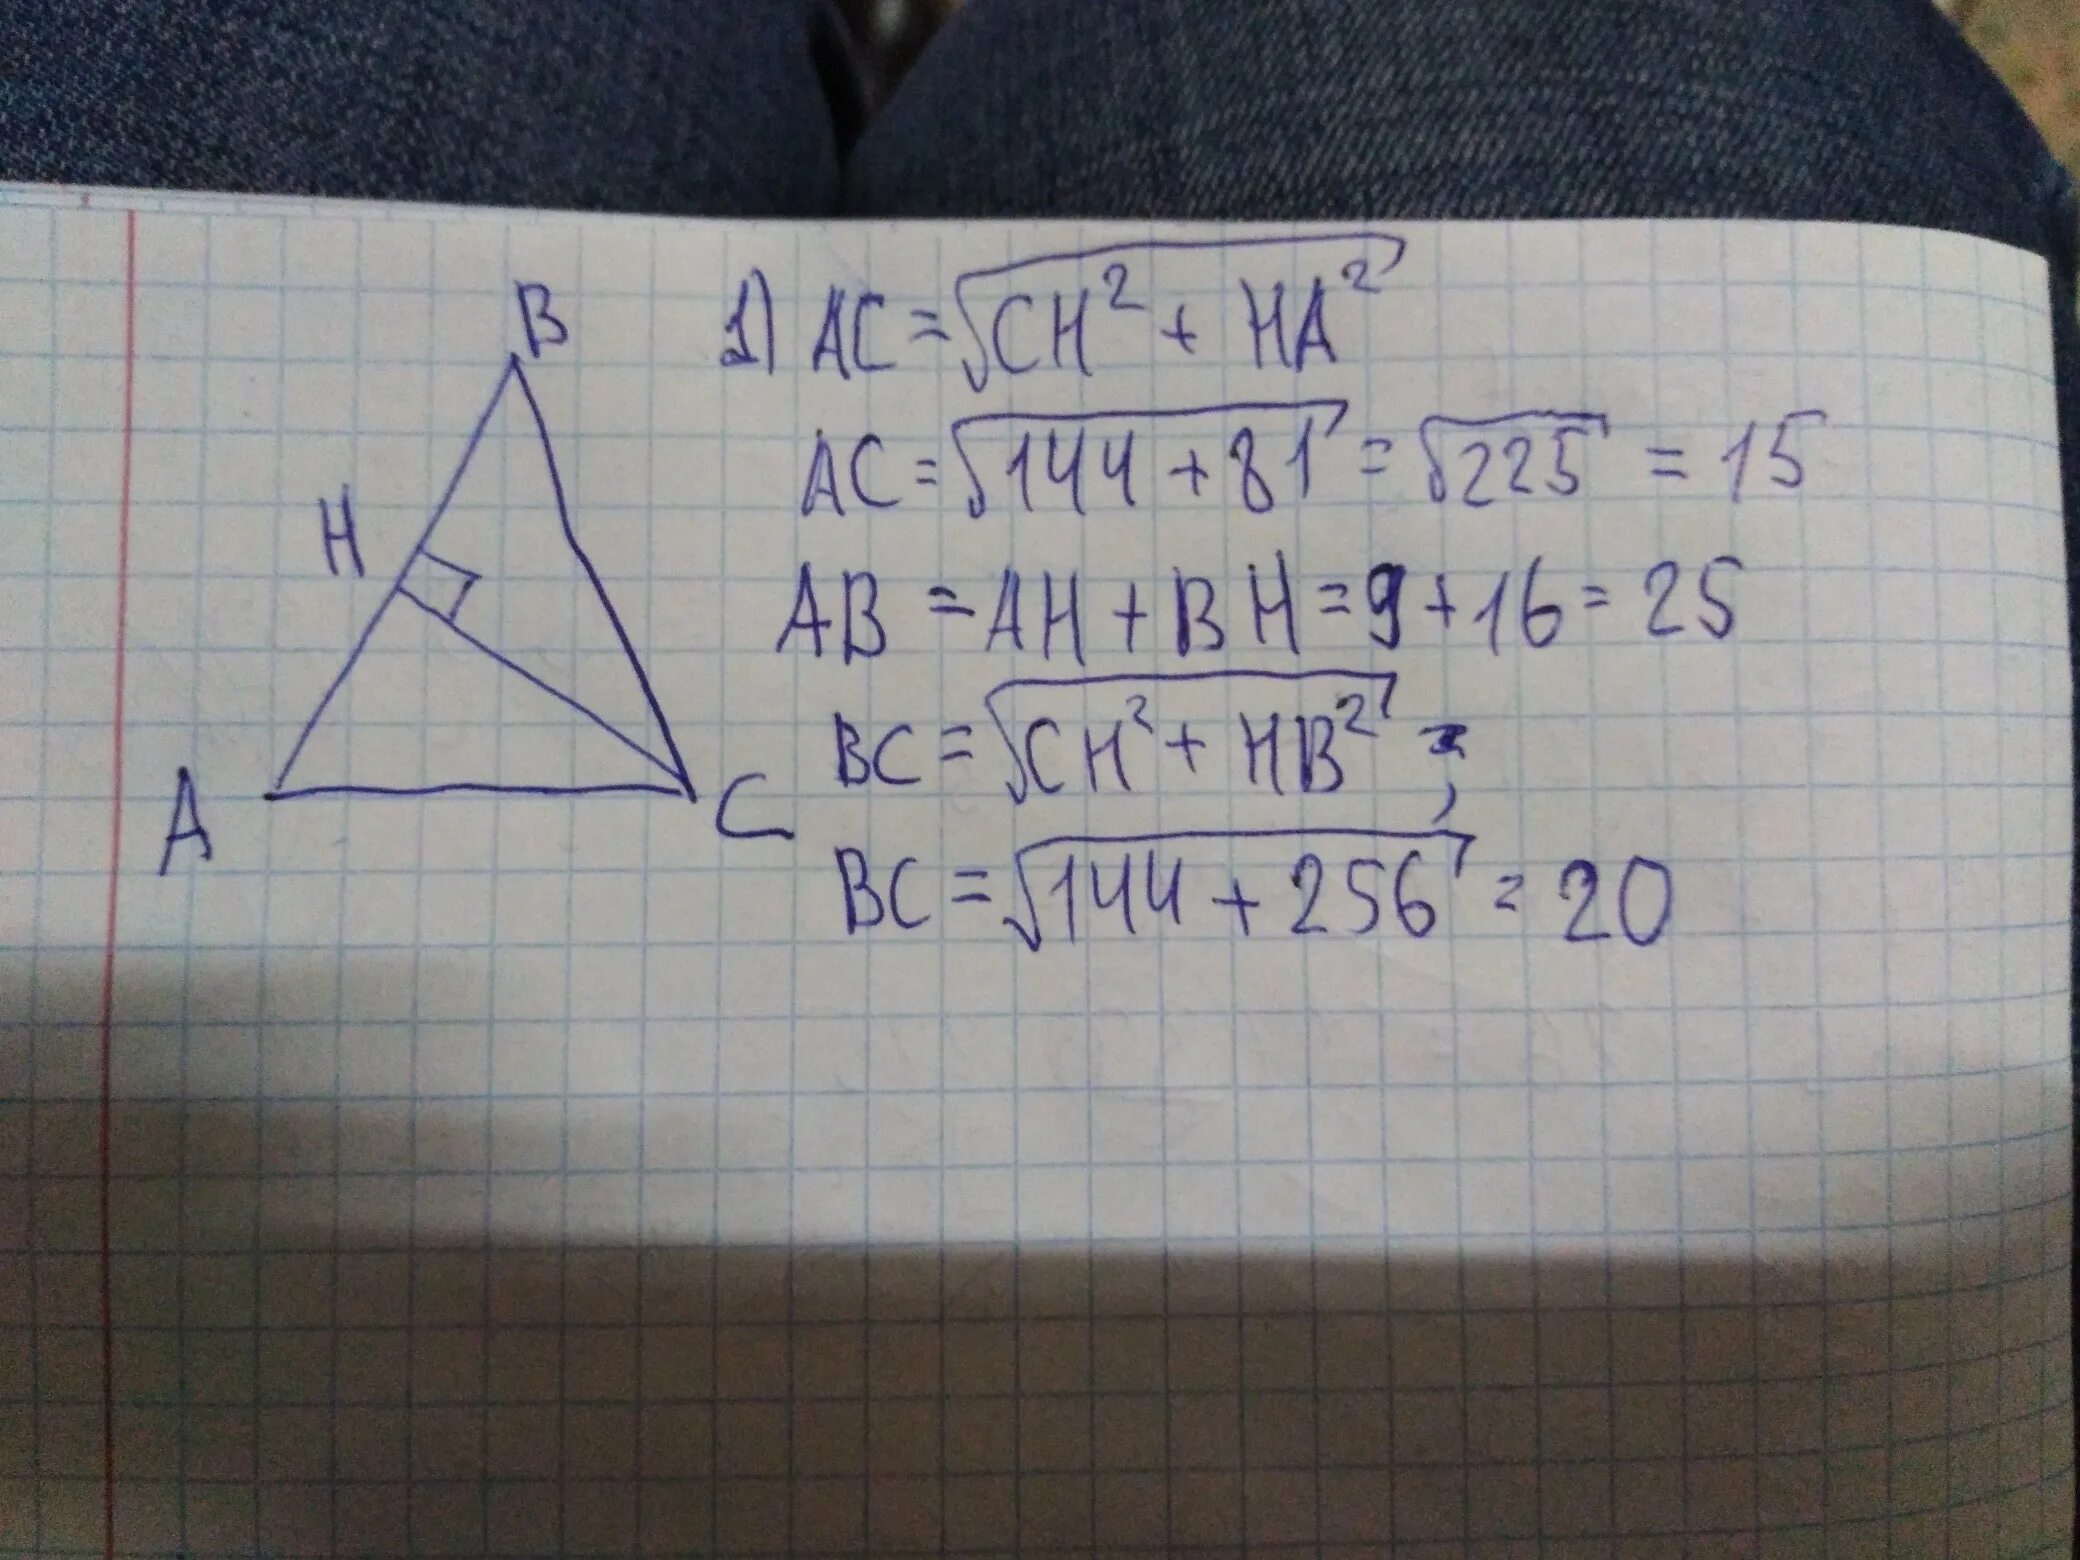 Bh 64 ch 16. В треугольнике высота Вн делит. В треугольнике АВС АВ вс высота АН делит. АВ=АС А высота Вн делит сторону АС. Треугольник 24 54 АВ=Y.